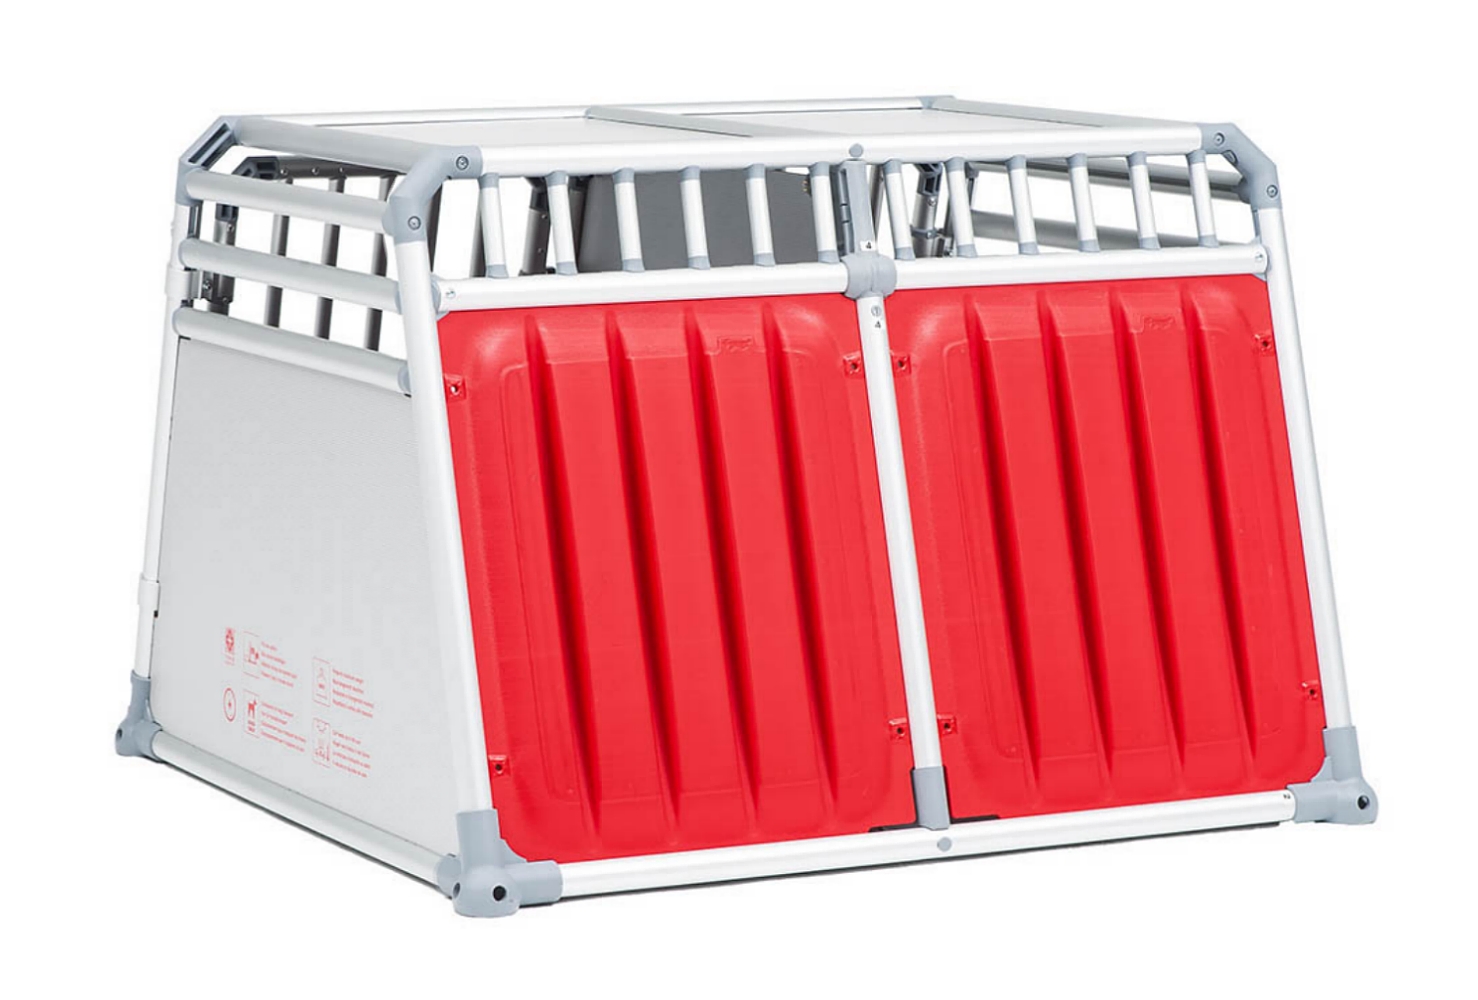 Dog crate CX-9 4pets PRO double | PetWareShop